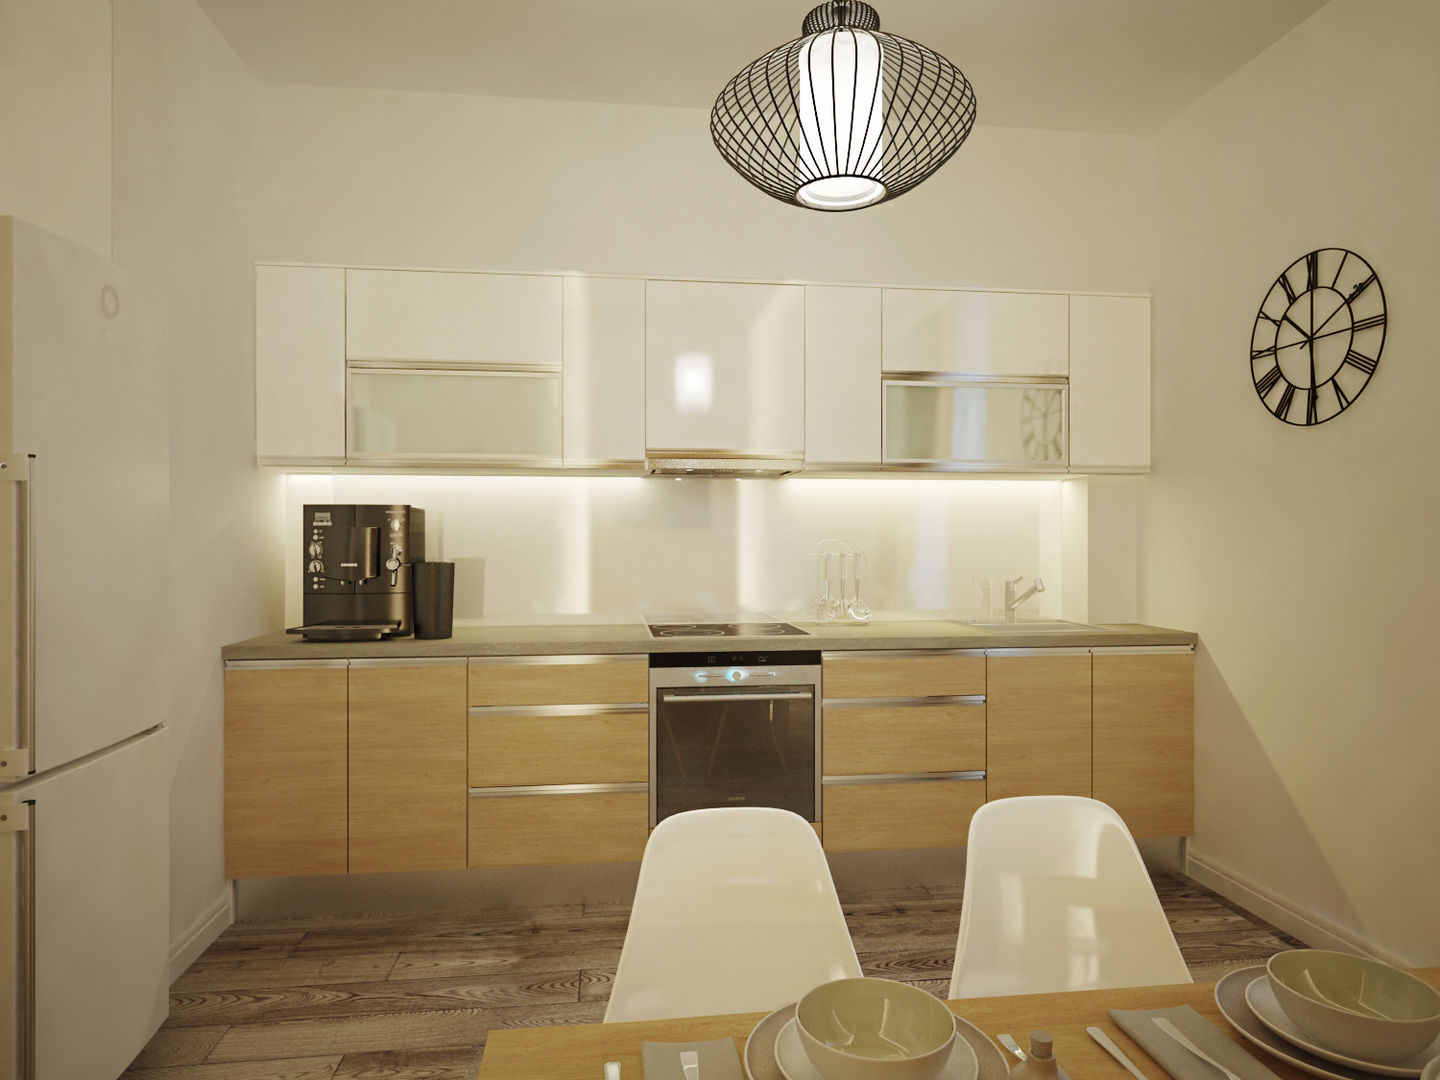 Квартира в современном минимализме, Polovets design studio Polovets design studio Cocinas minimalistas